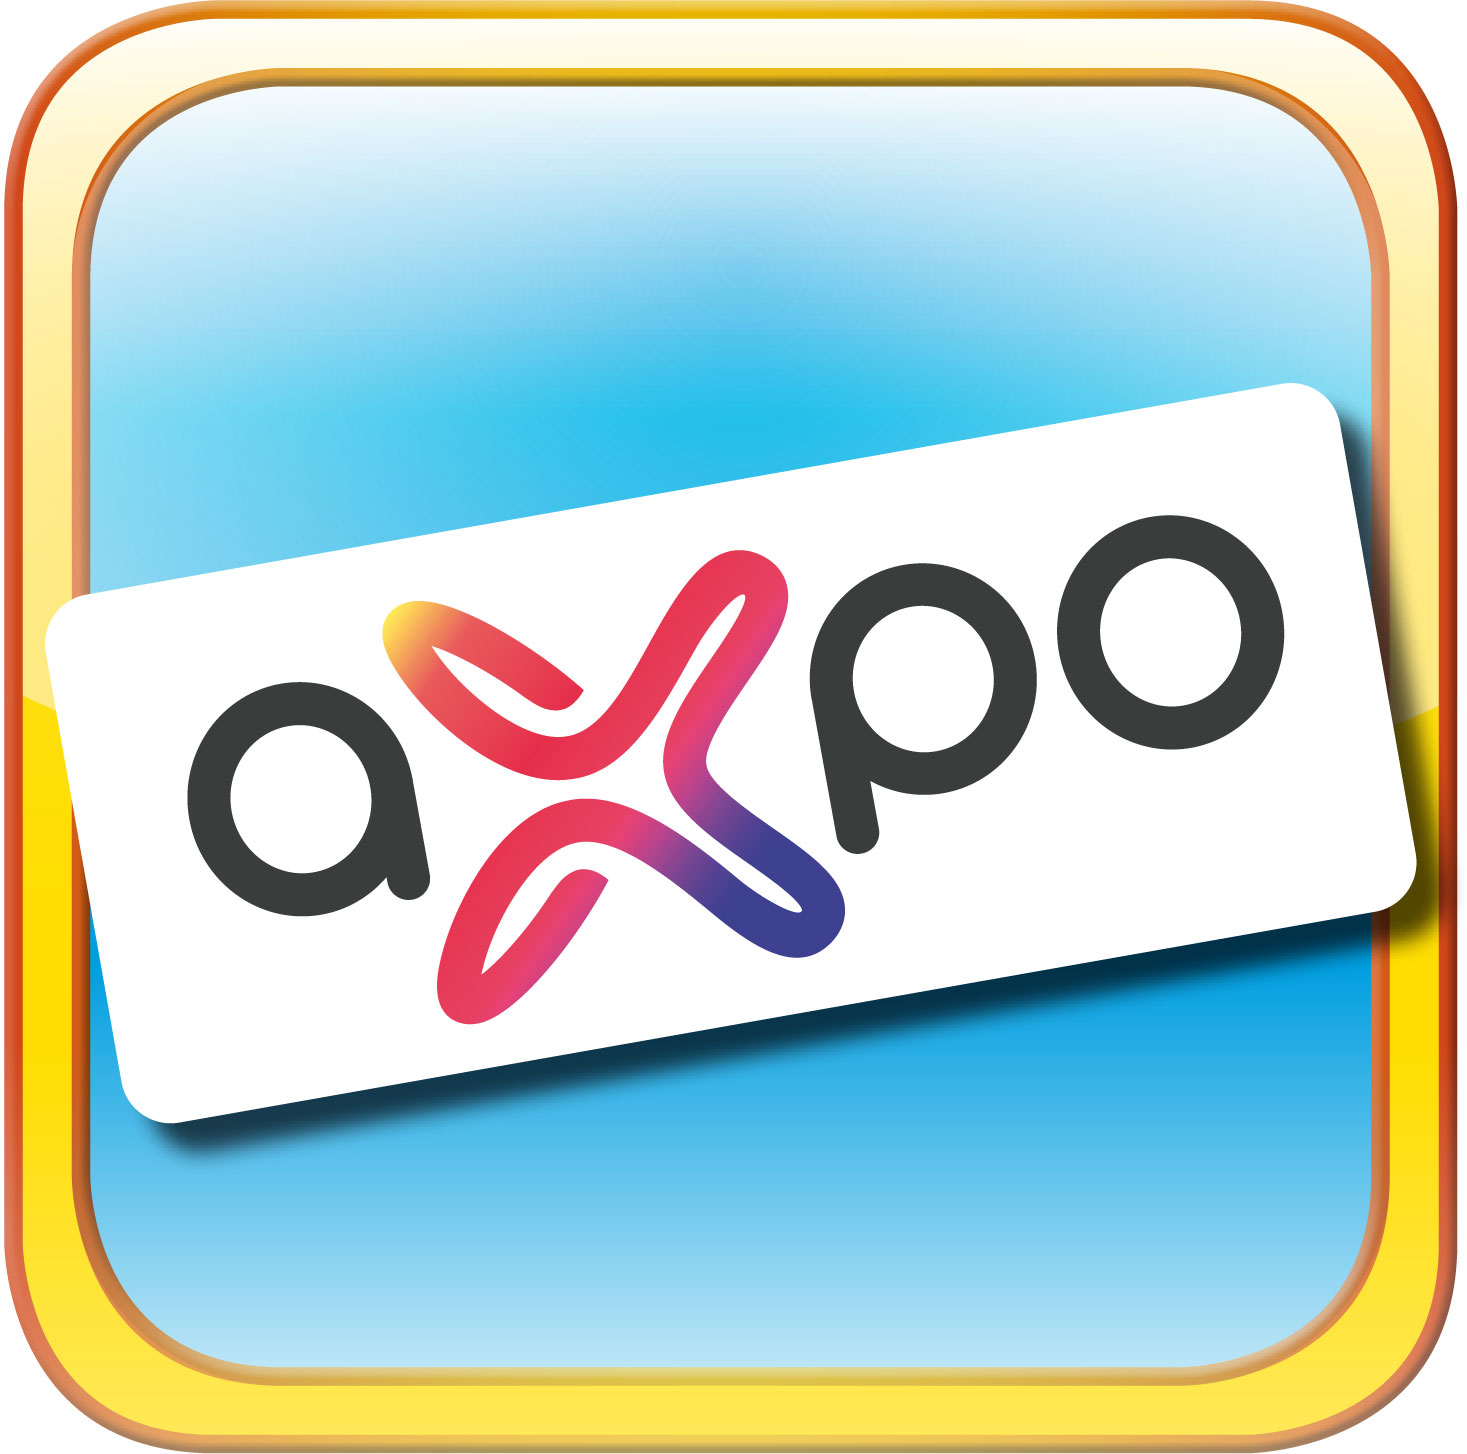 axpo unterstützt das Beltane Parkvolleyball-Turnier in Cham Zug | axpo und das Beltane Volleyball-Turnier